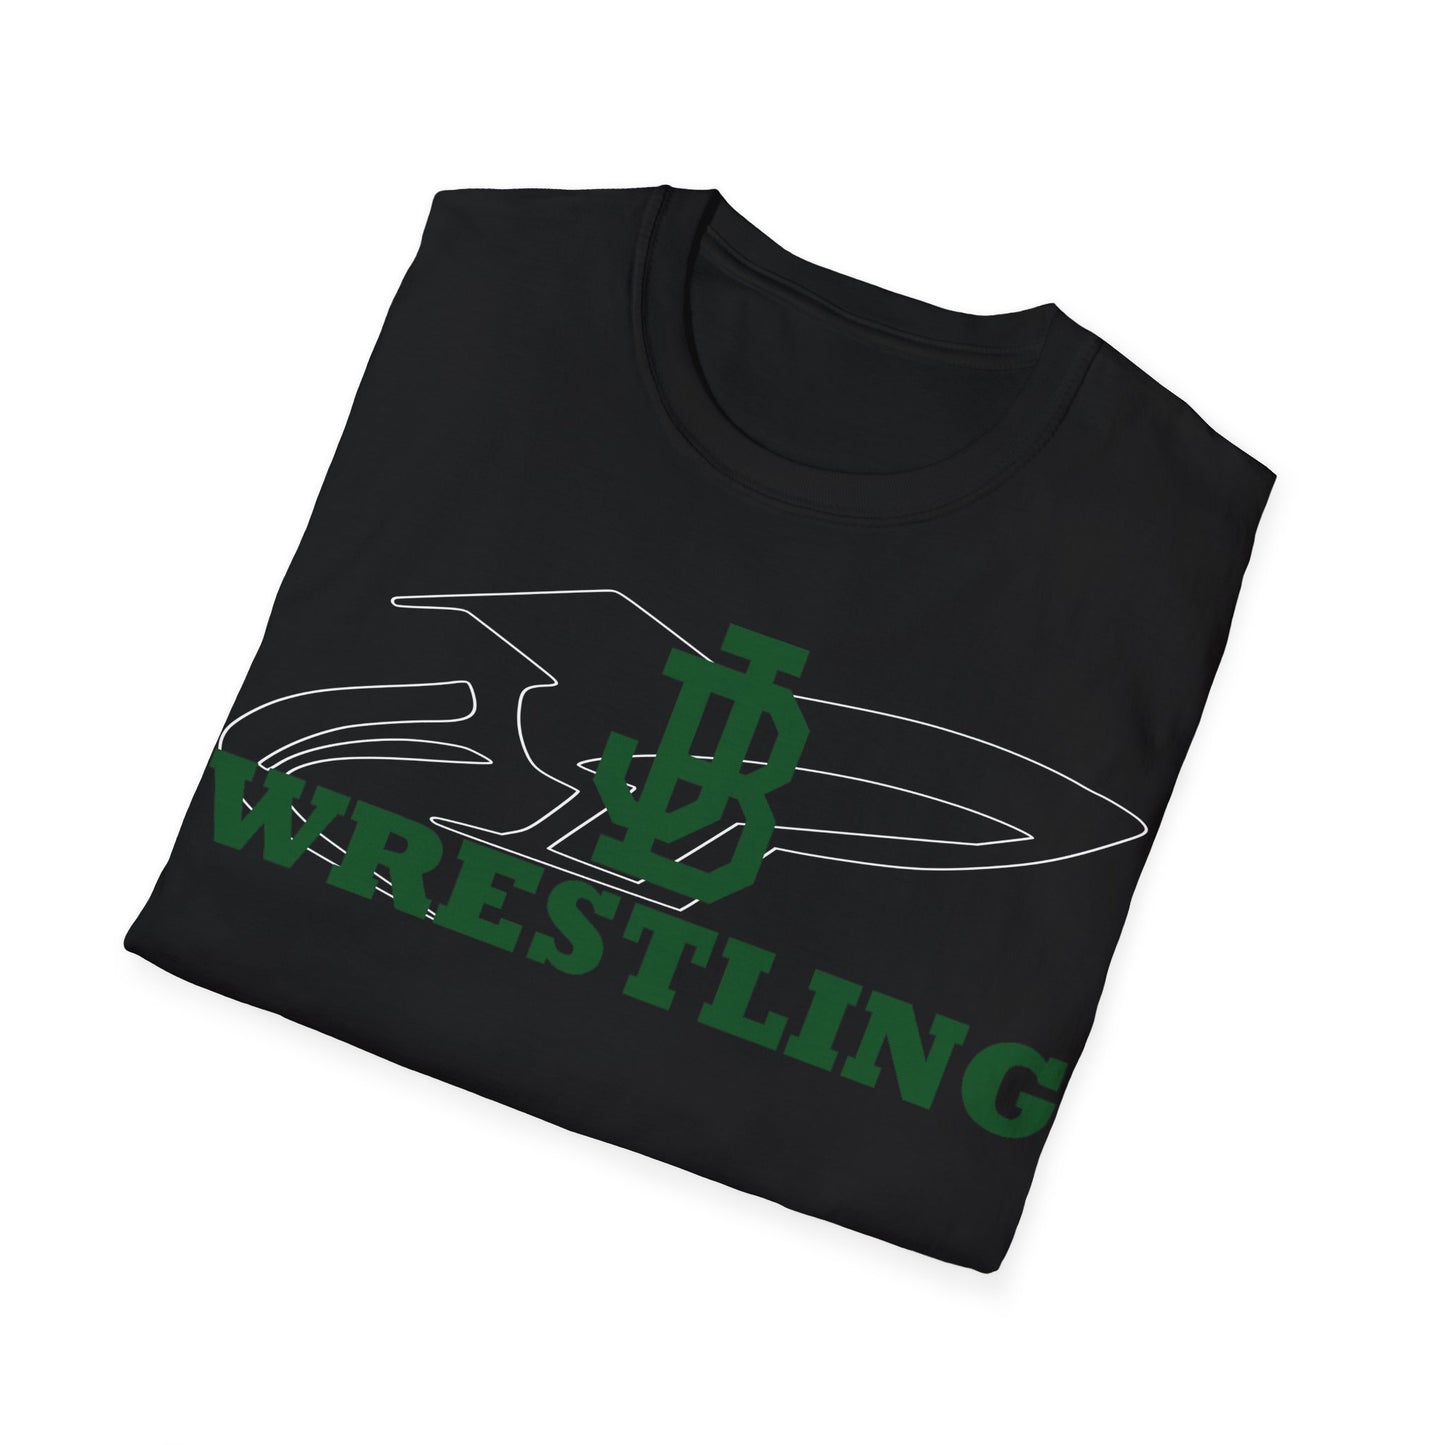 JB Wrestling Unisex Softstyle T-Shirt